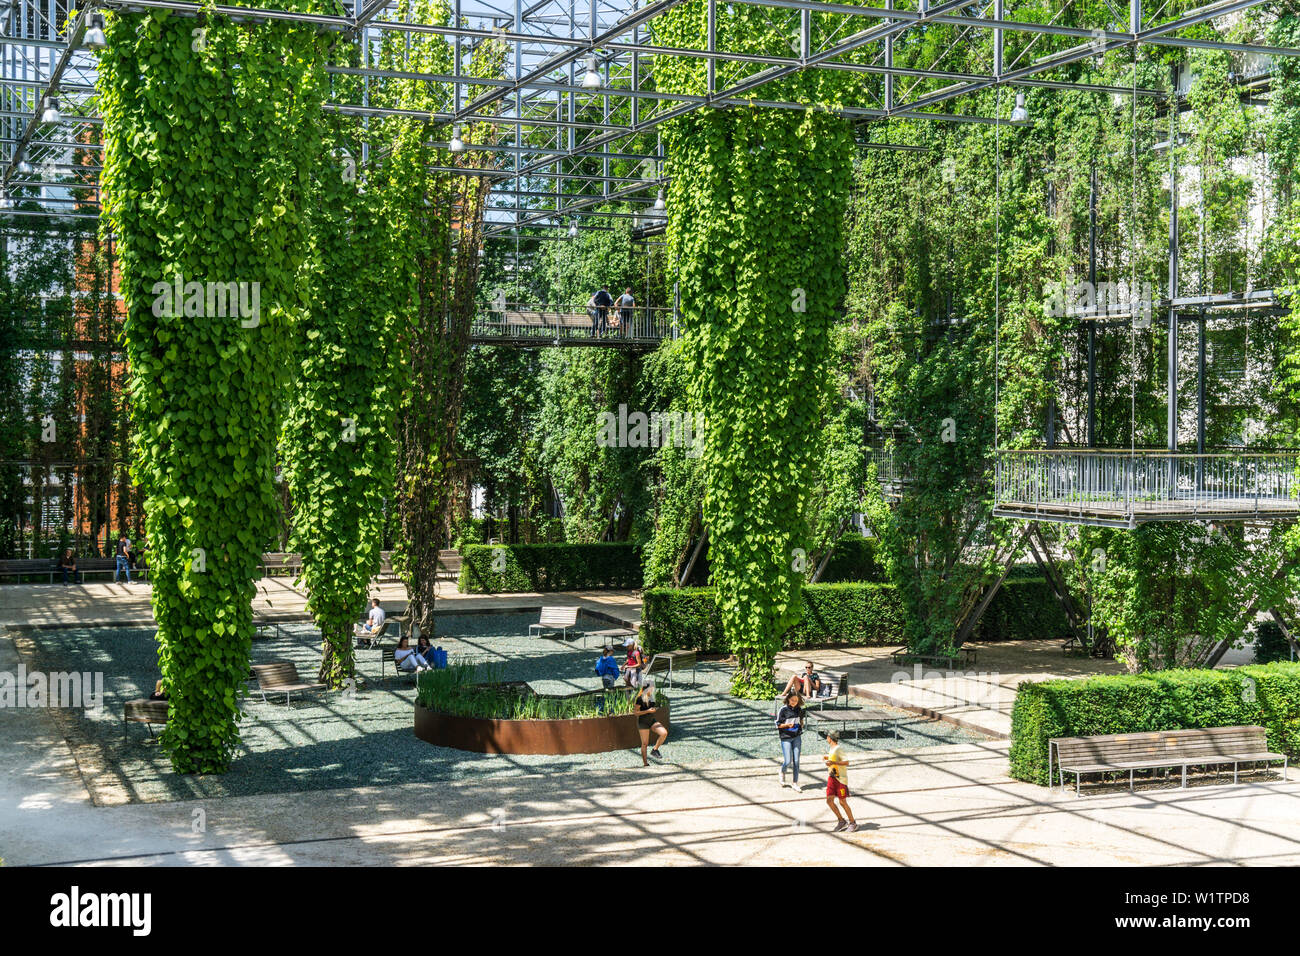 MFO Park, parc public de l'ex-Maschinenfabrik Oerlikon (MFO) , plantes grimpantes, cadre d'acier, Zurich, Suisse Banque D'Images